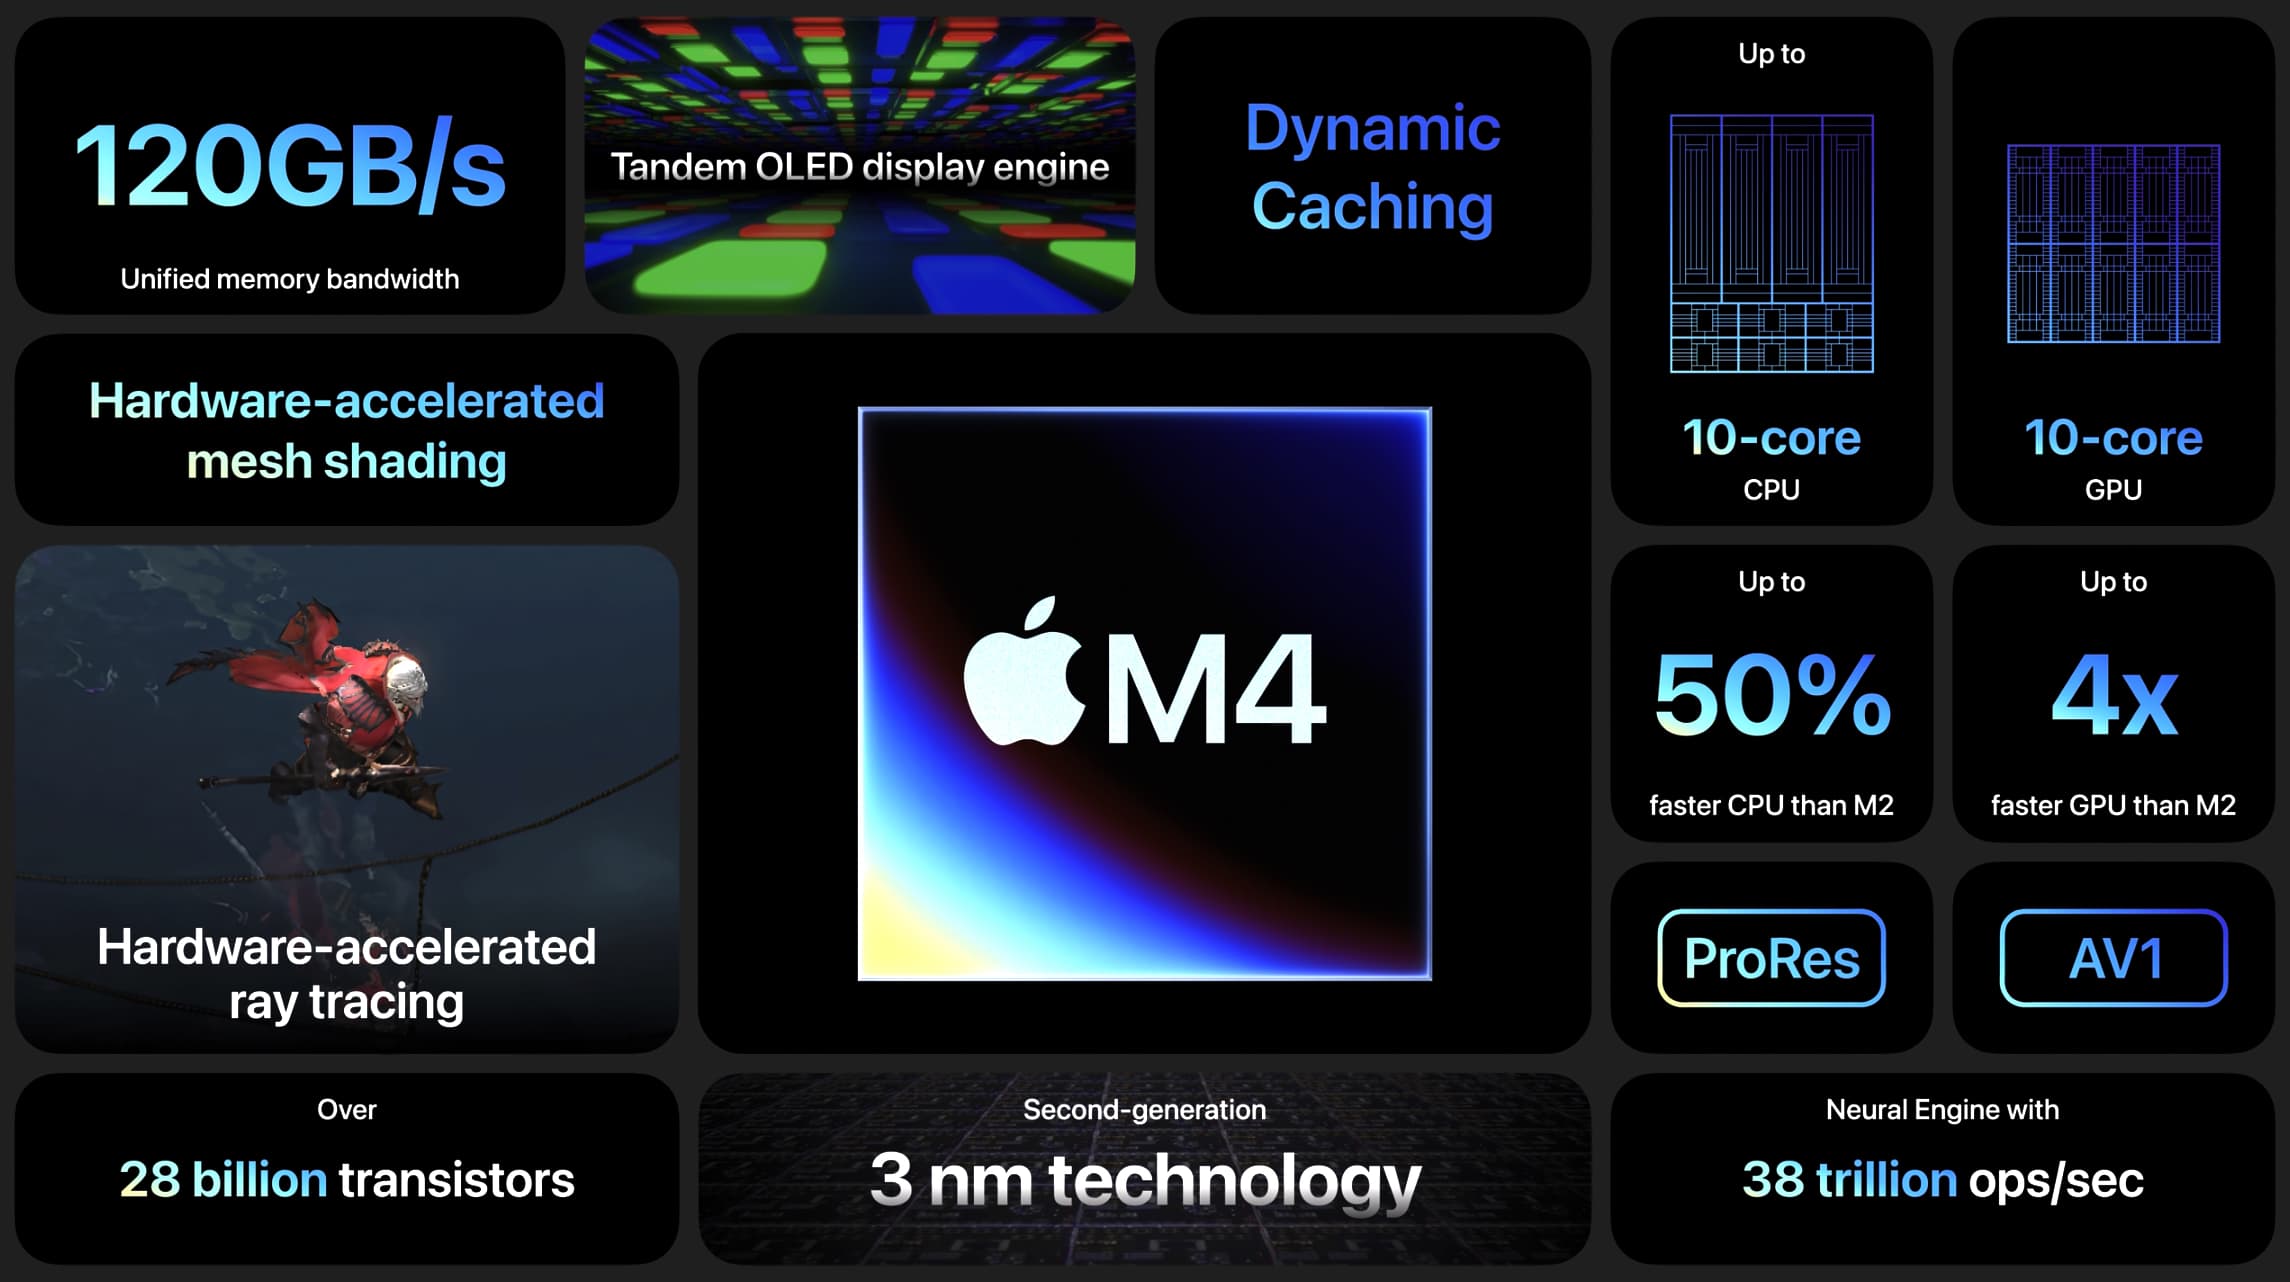 M4 iPad Pro vs M2 iPad Pro performance